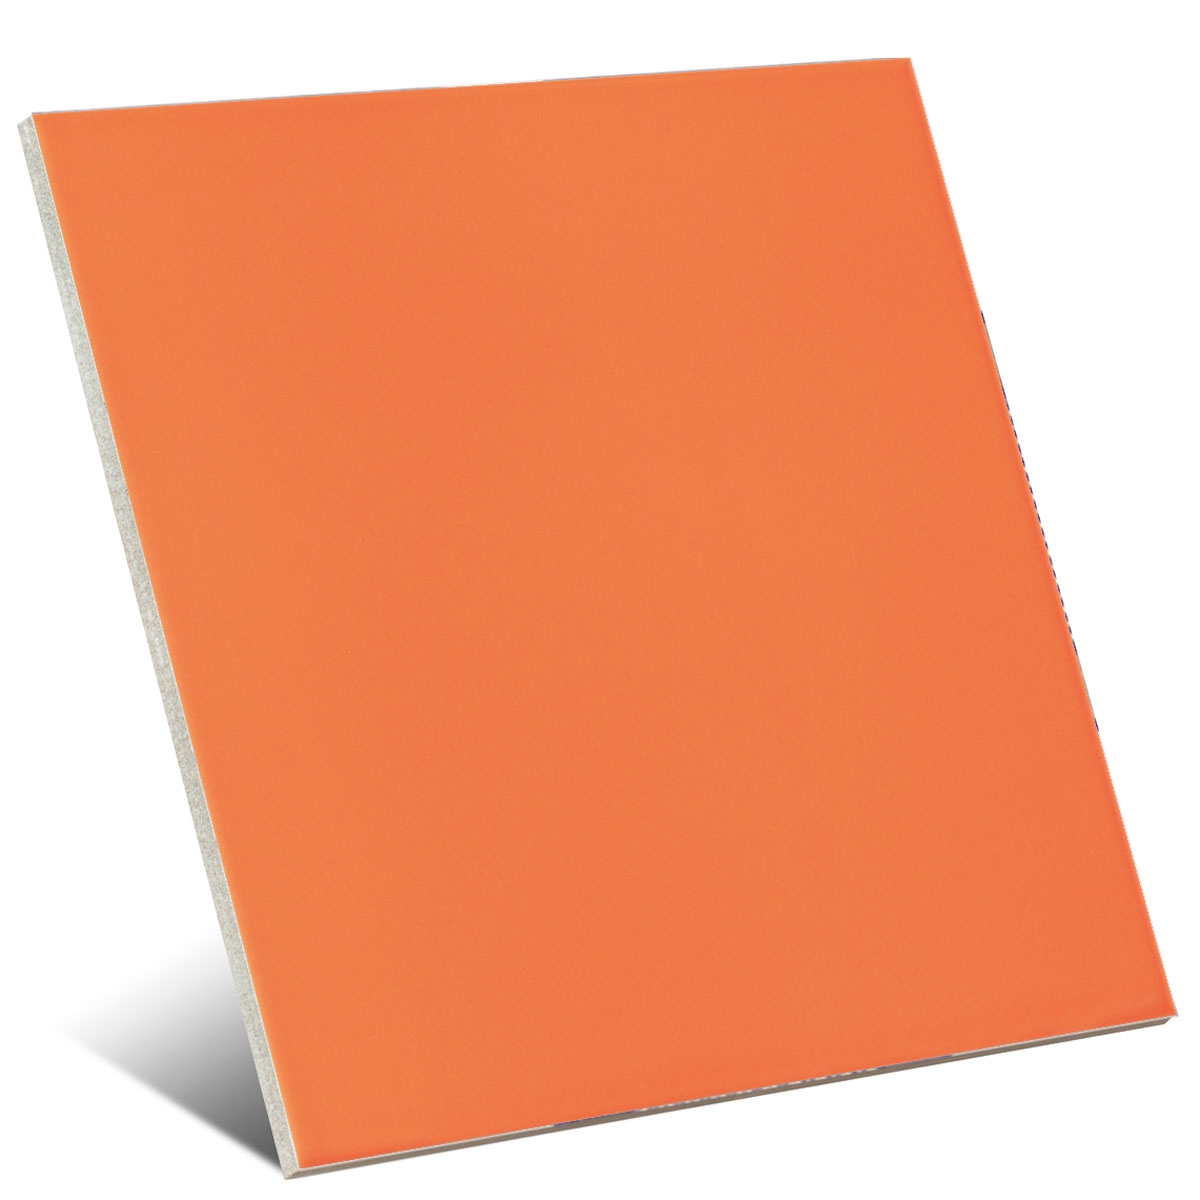 Cor de laranja mate 20x20 cm (caixa 1 m2)